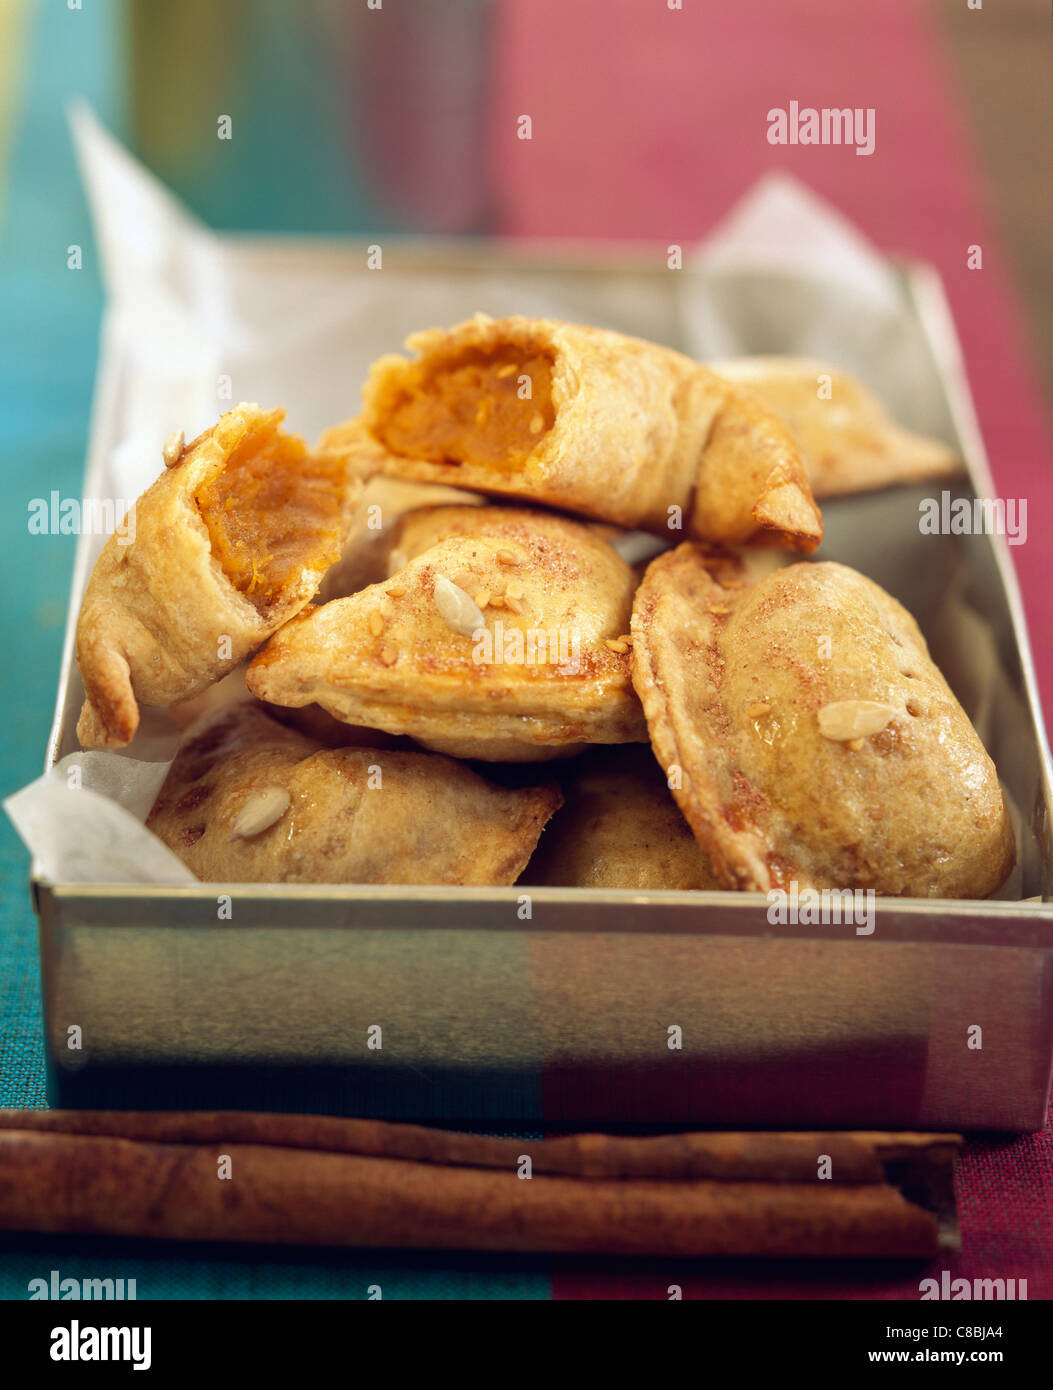 sweet potato turnovers Stock Photo - Alamy